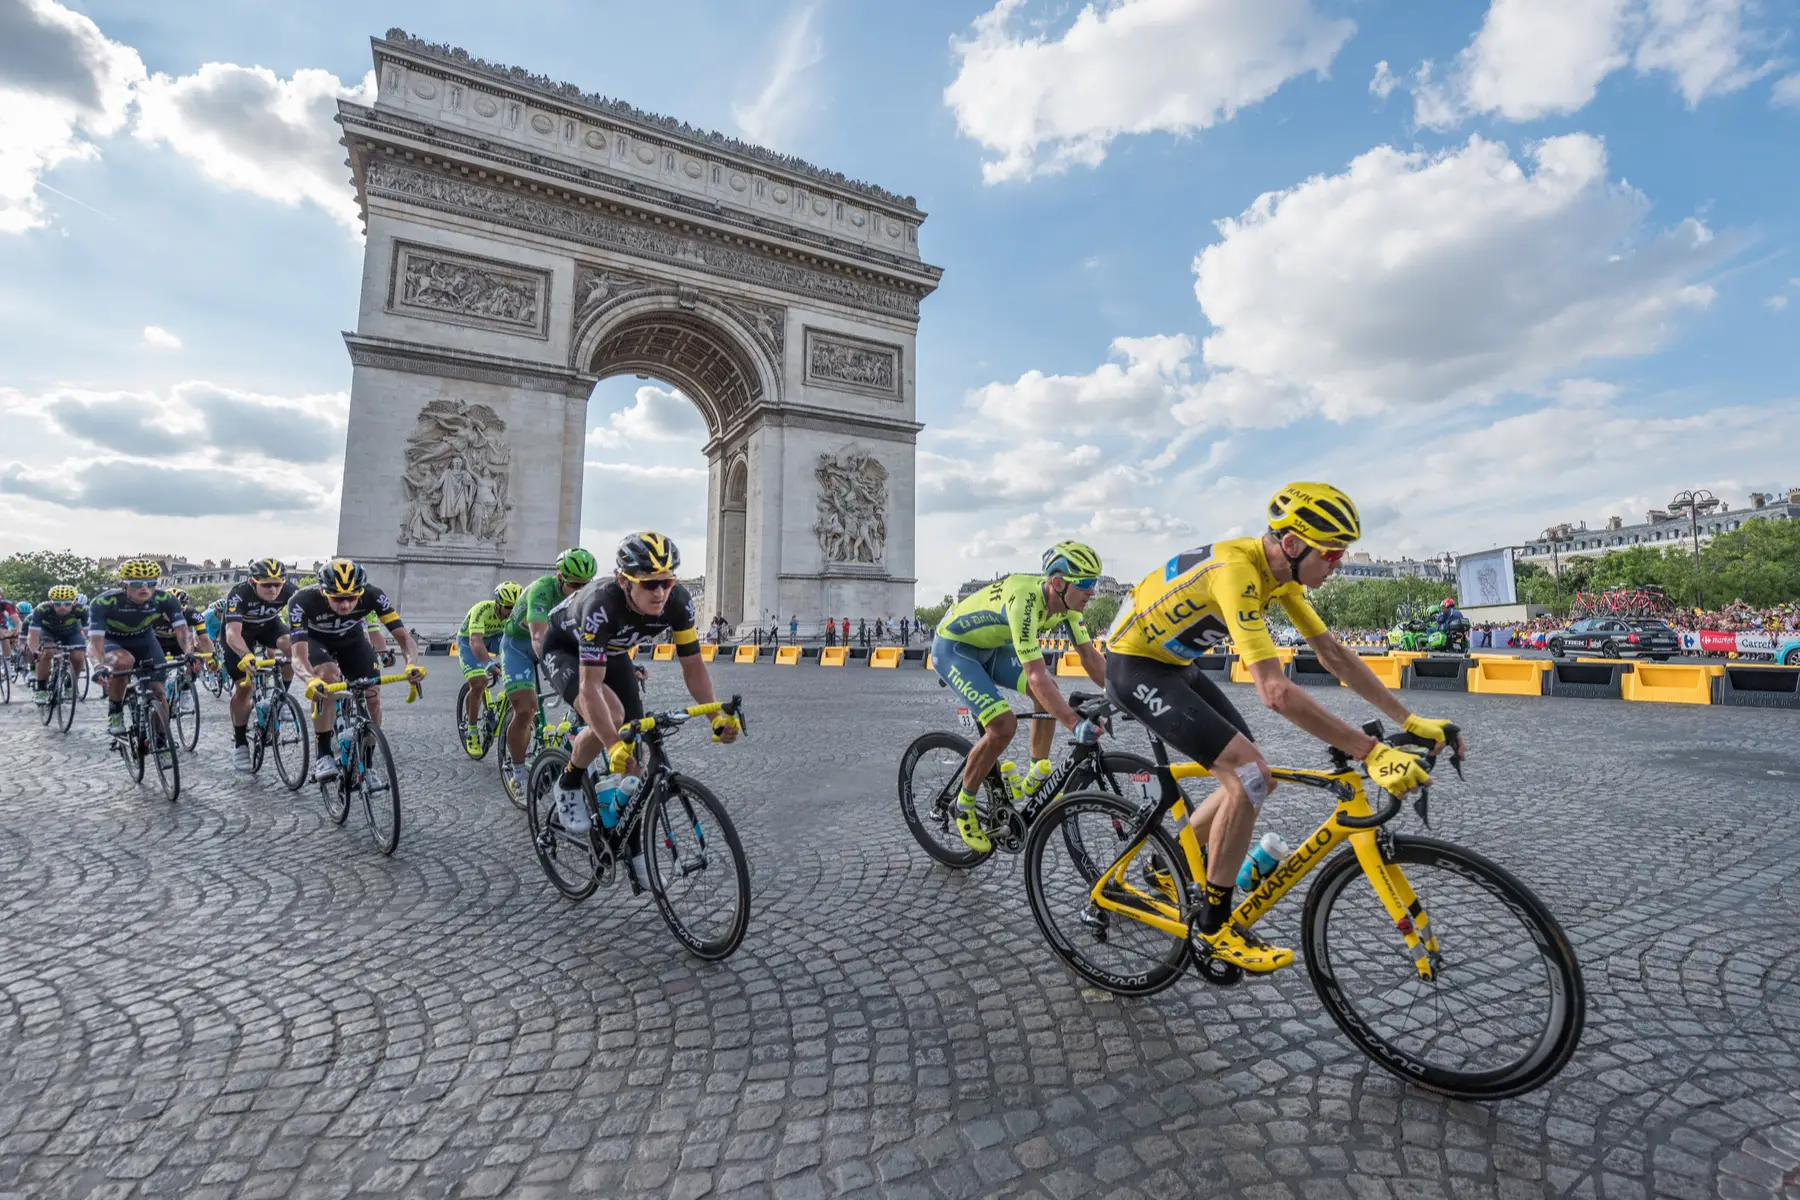 Tour de France at the Arc de Triomphe in Paris